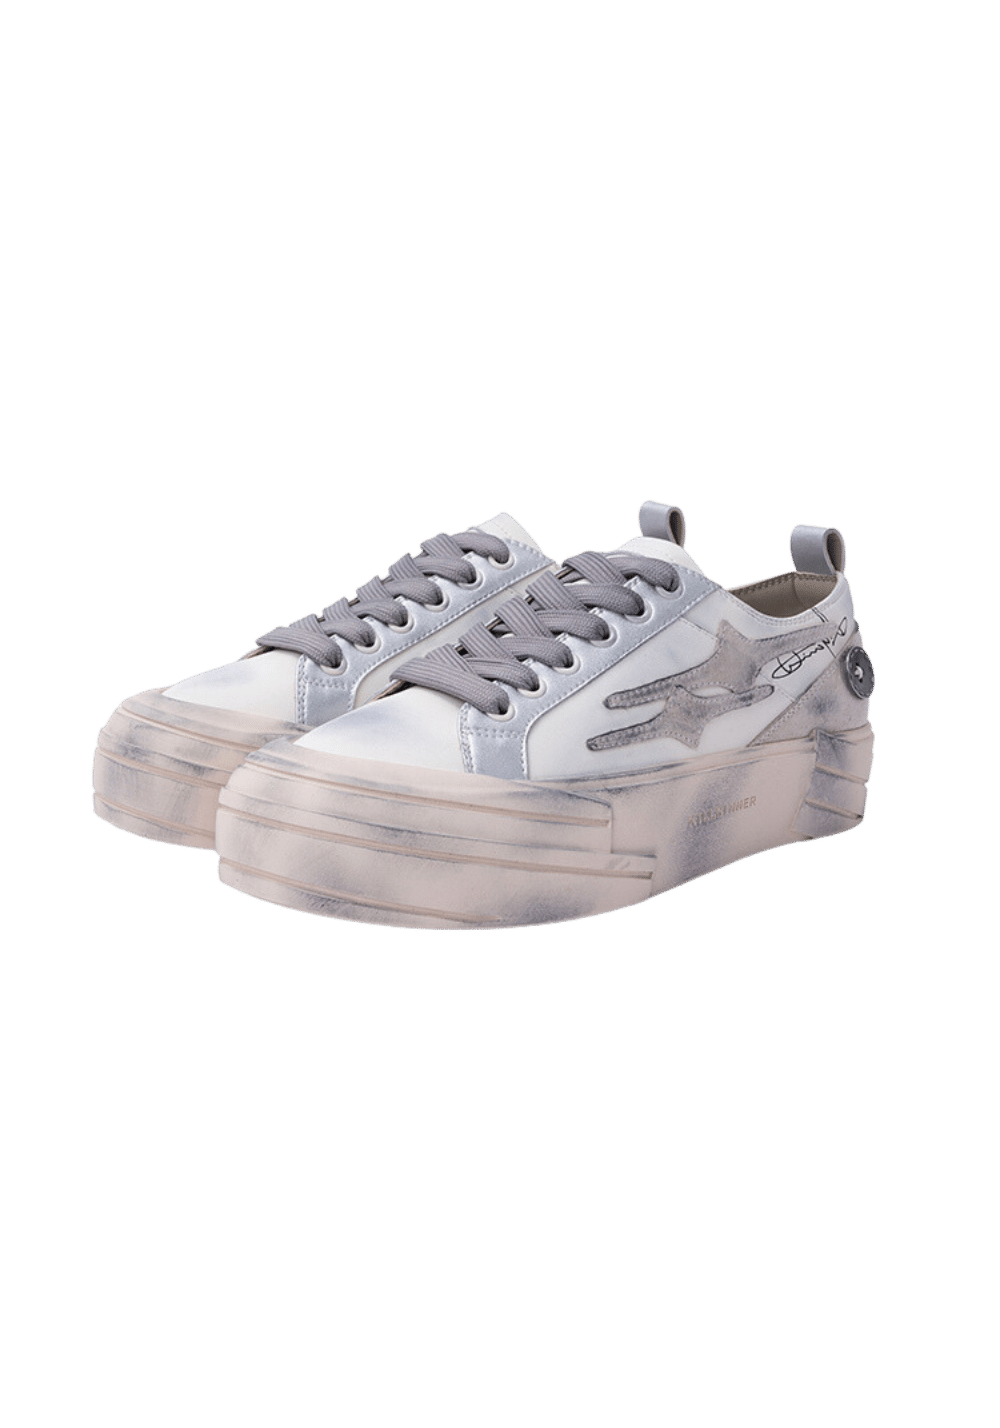 Slate Gray Canvas Shoes - PSYLOS 1, Slate Gray Canvas Shoes, Shoes, KILLWINNER, PSYLOS 1